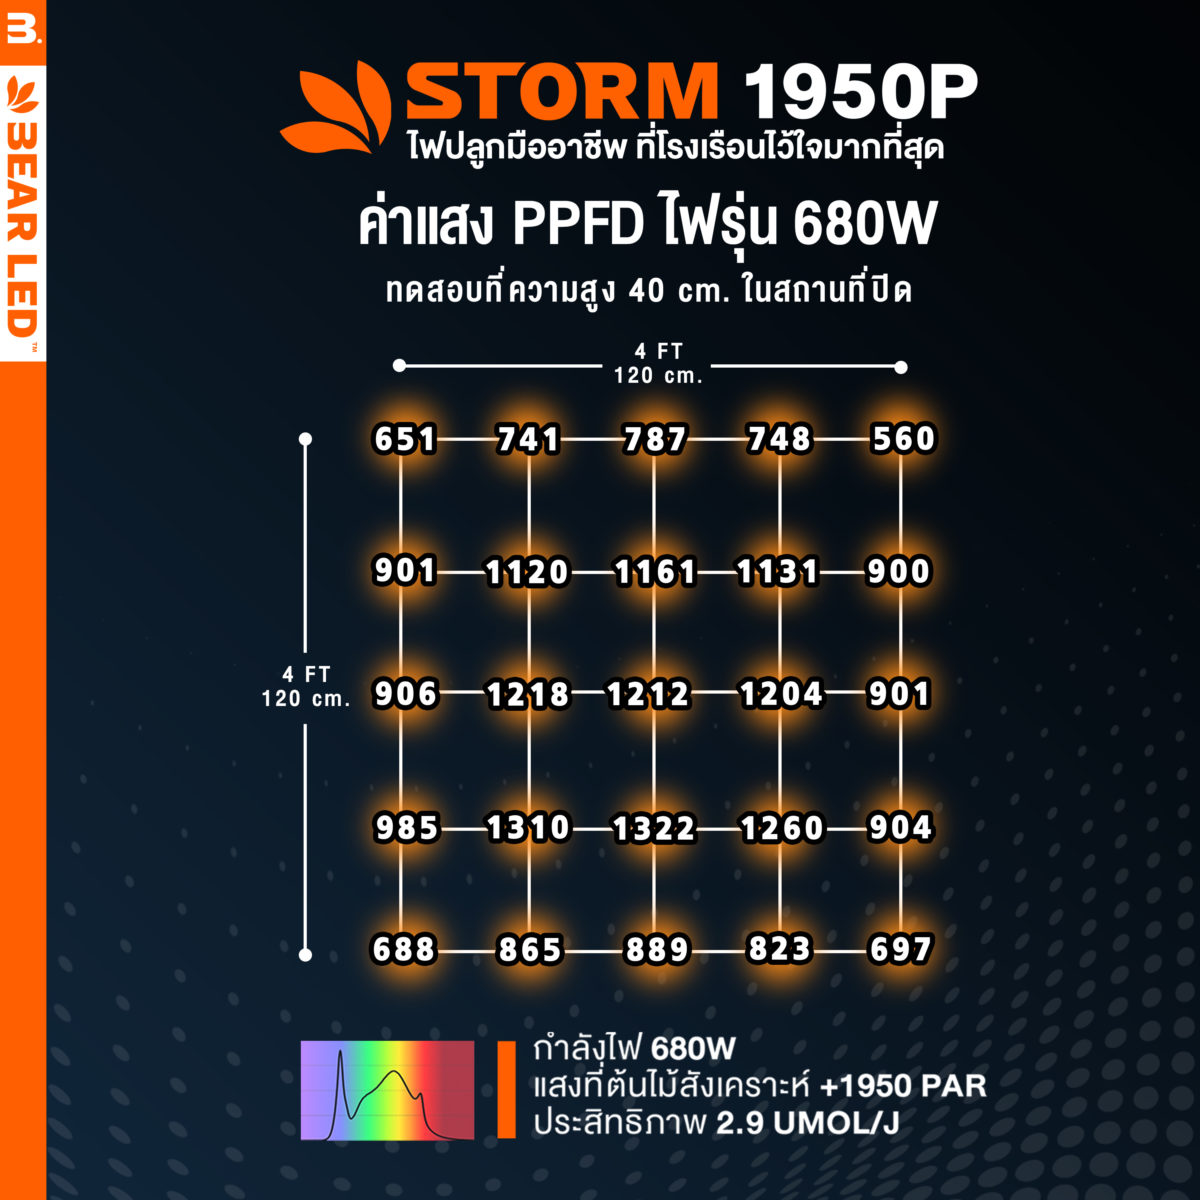 PPFD 680W 3 1 scaled